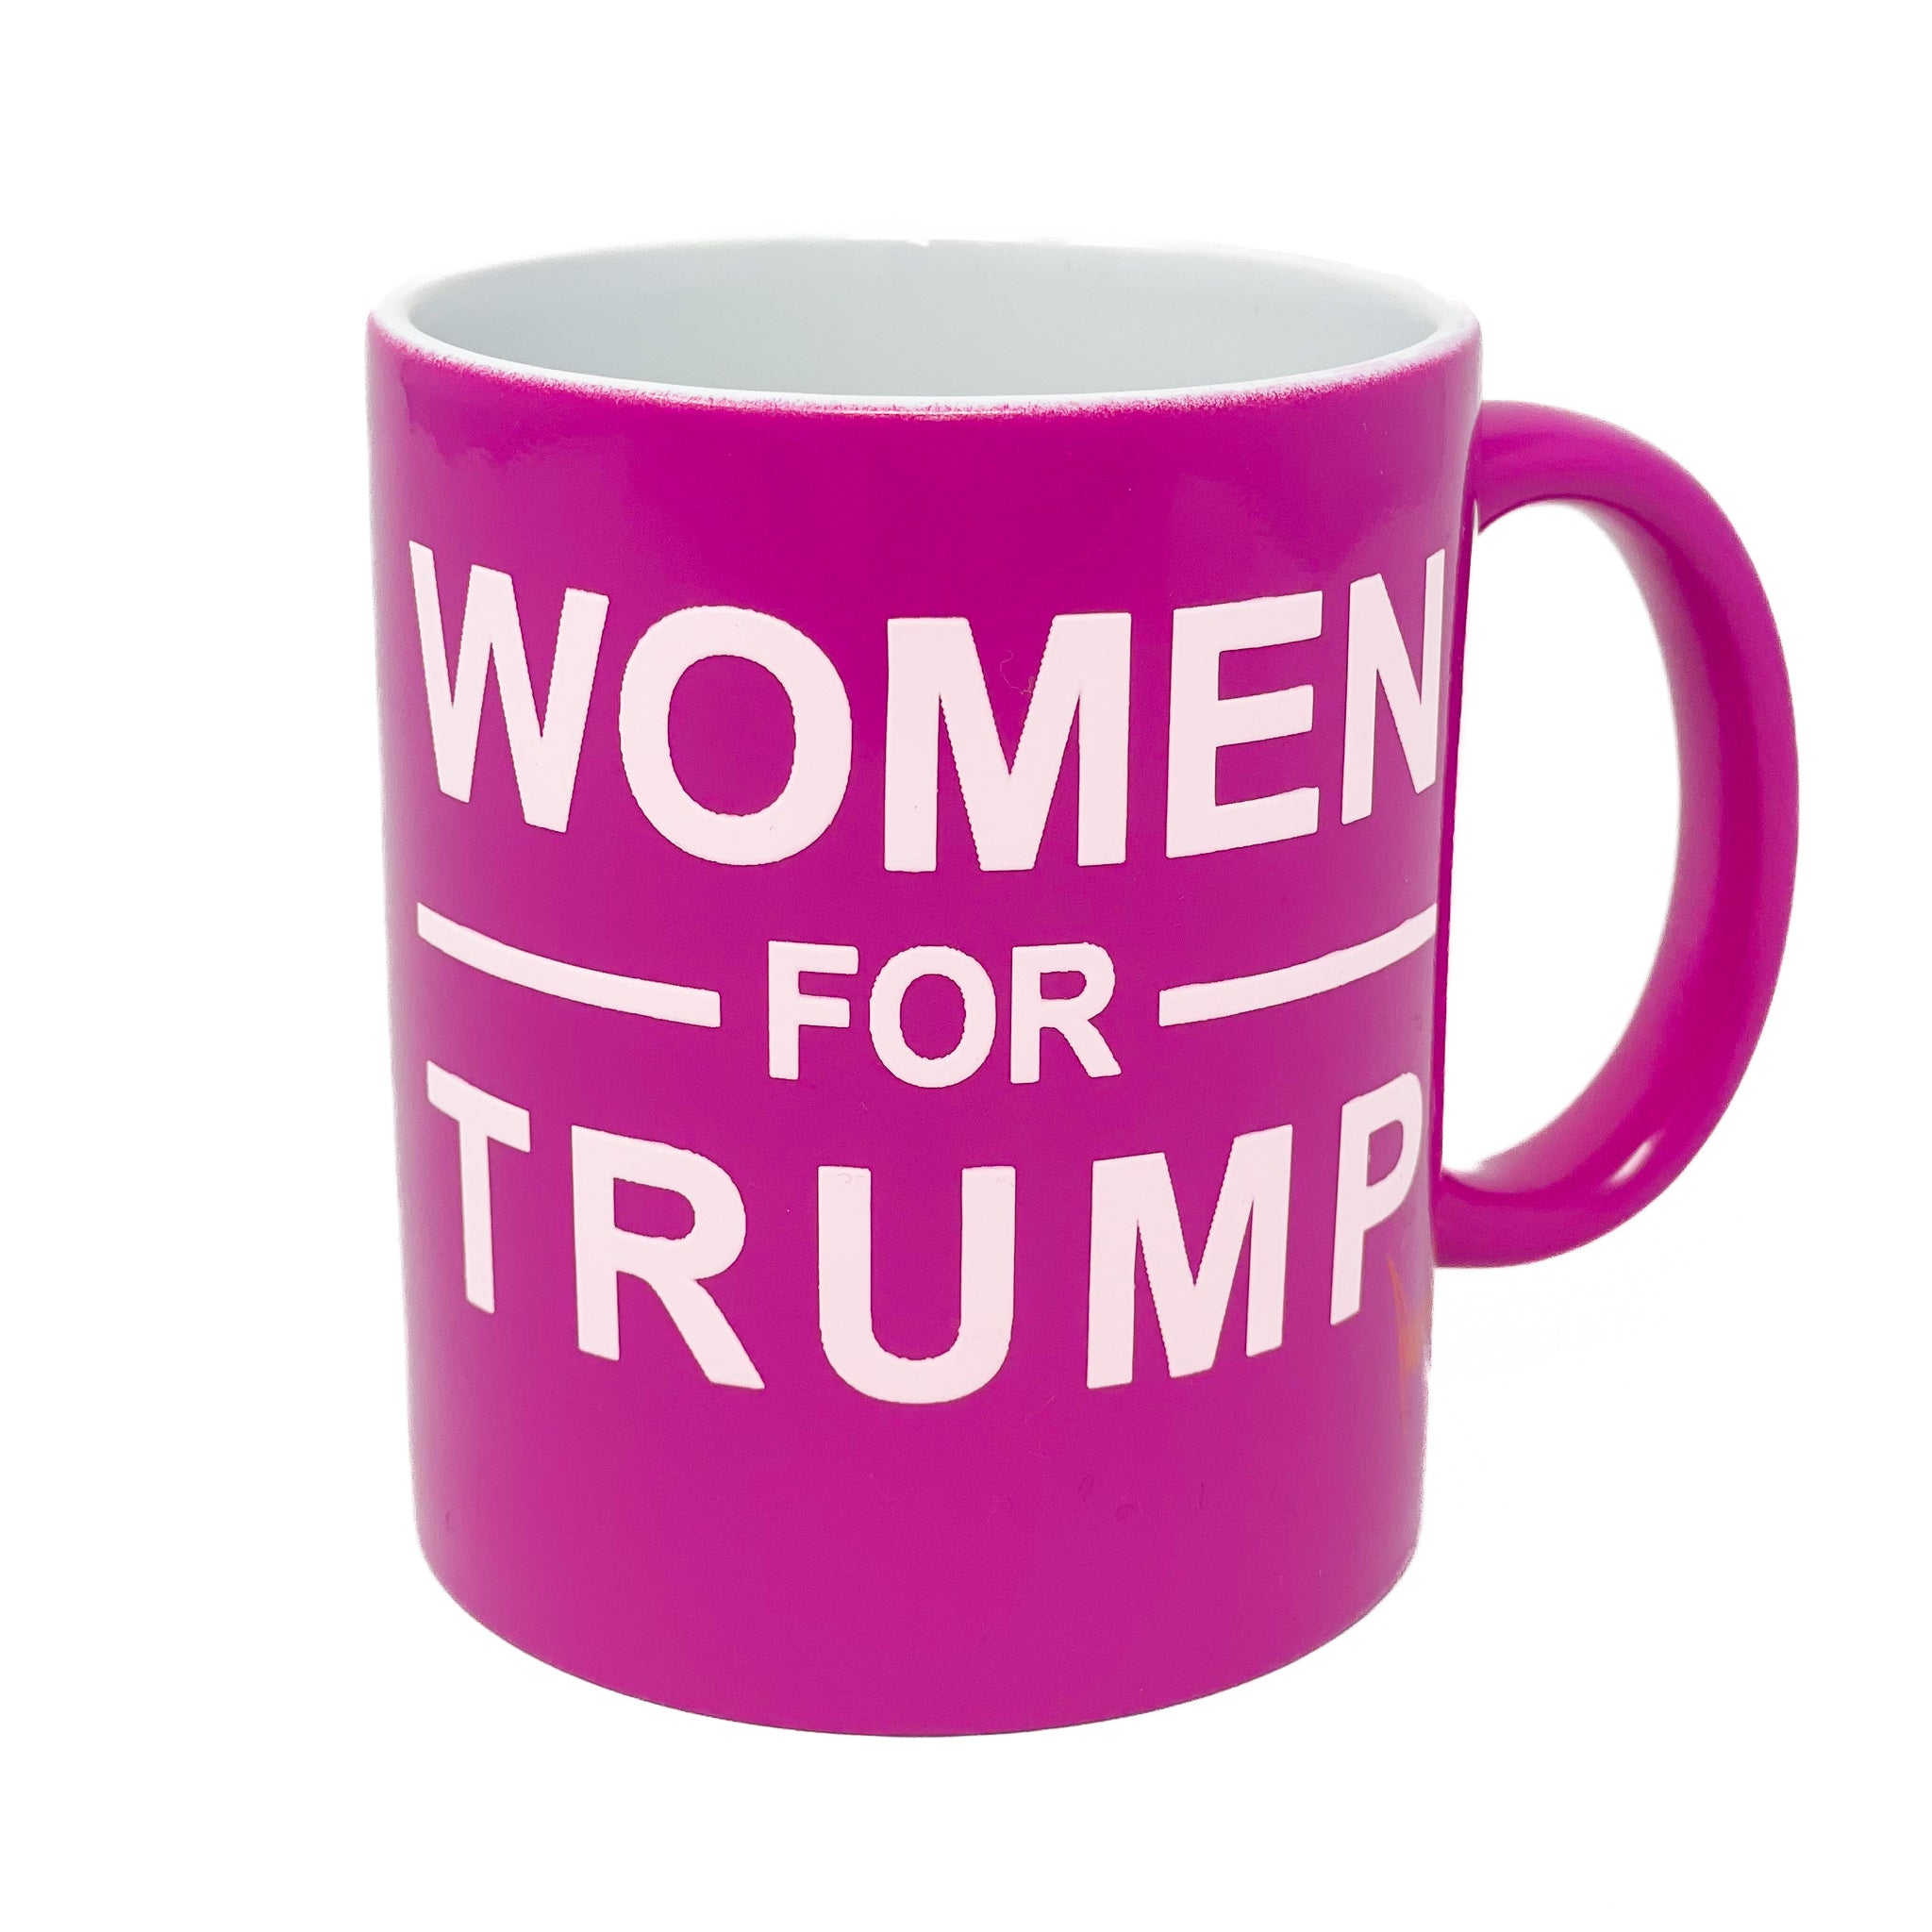 Donald Trump Mugs